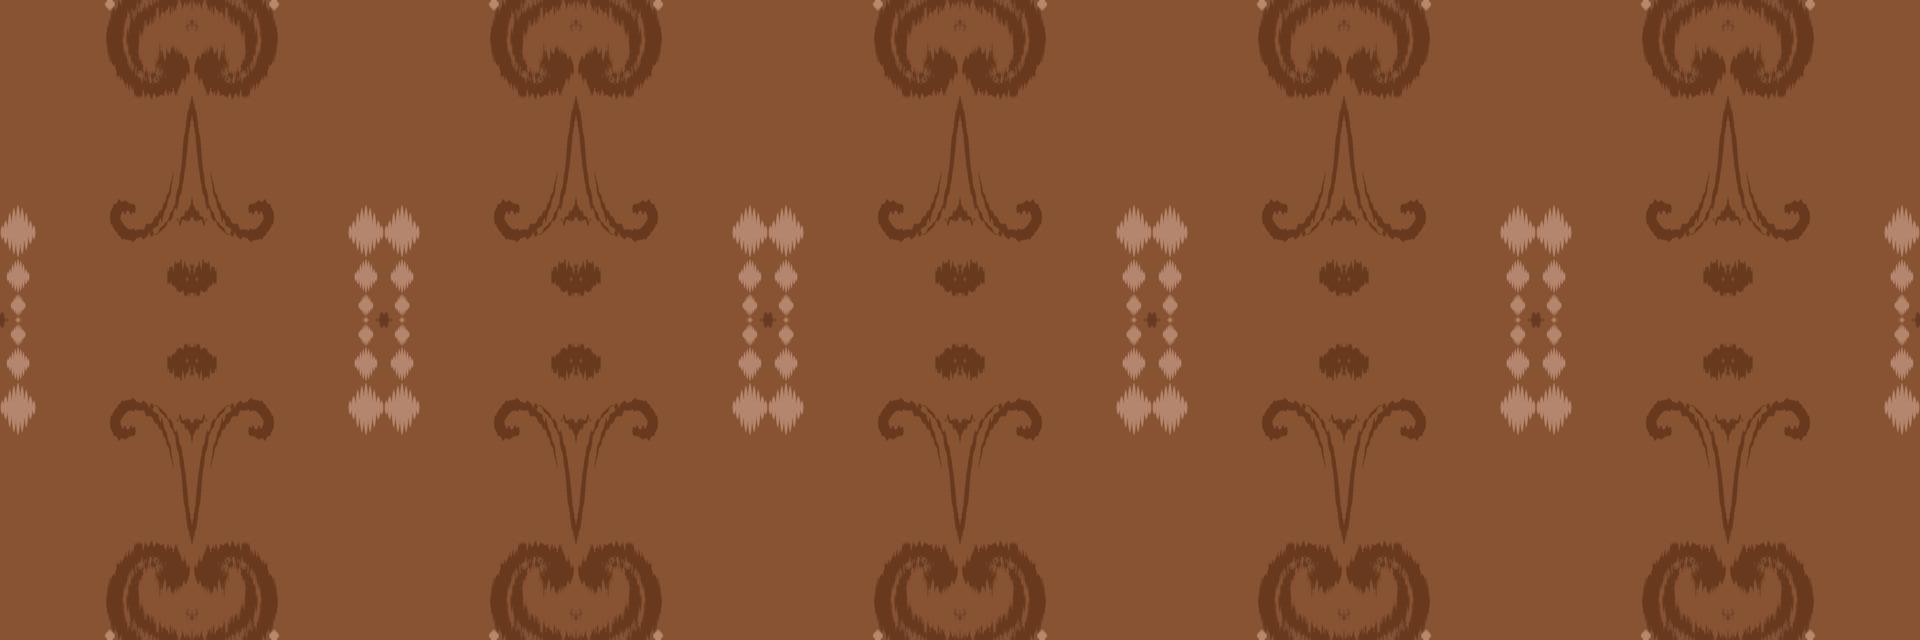 motivo ikat floreale batik tessile senza soluzione di continuità modello digitale vettore design per Stampa saree Kurti Borneo tessuto confine spazzola simboli campioni elegante